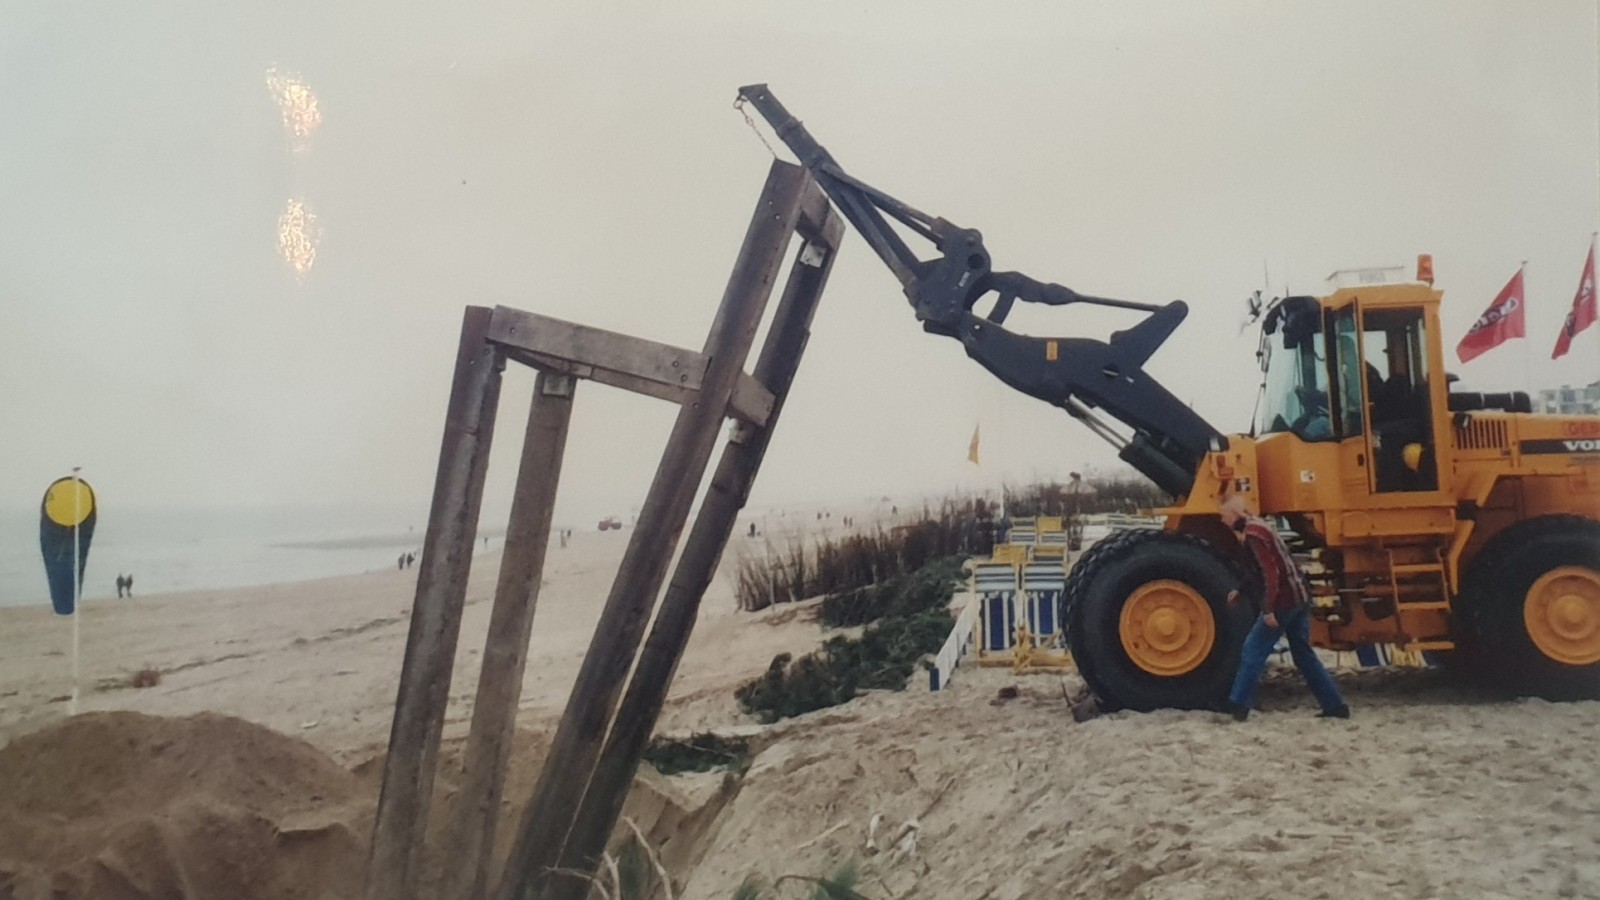 De herplaatsing van de stoel op het strand van Zandvoort